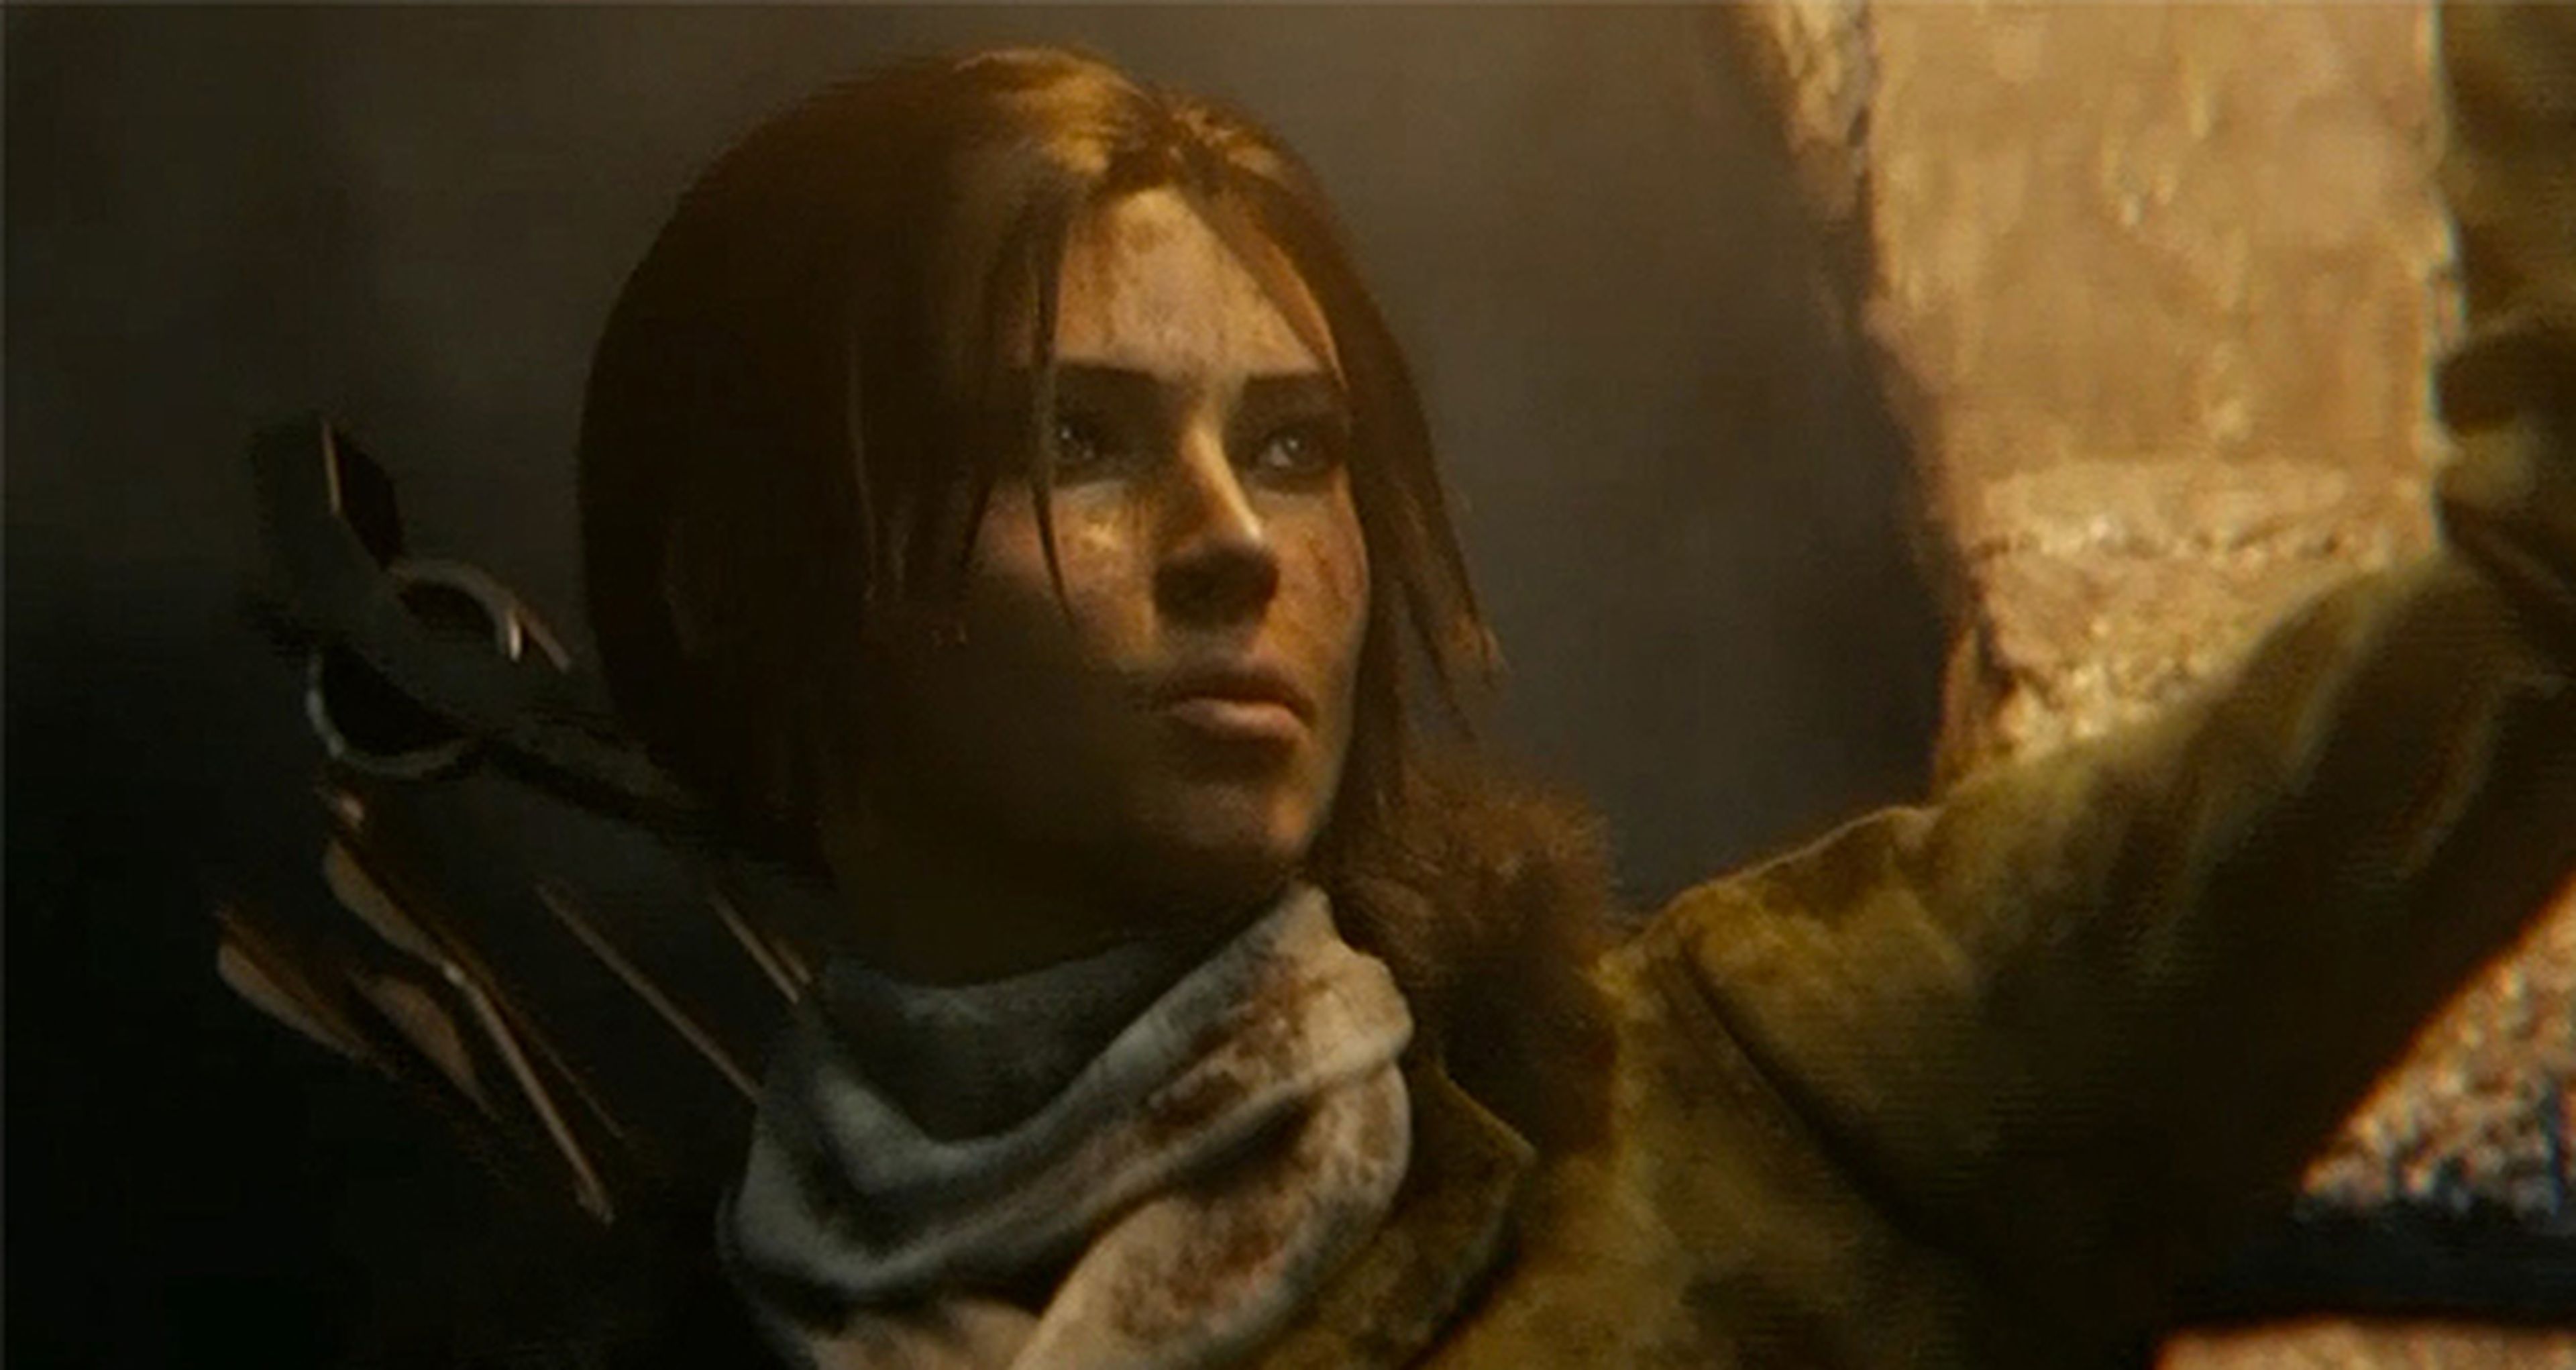 El blog de Tomb Raider habla de la exclusividad del juego